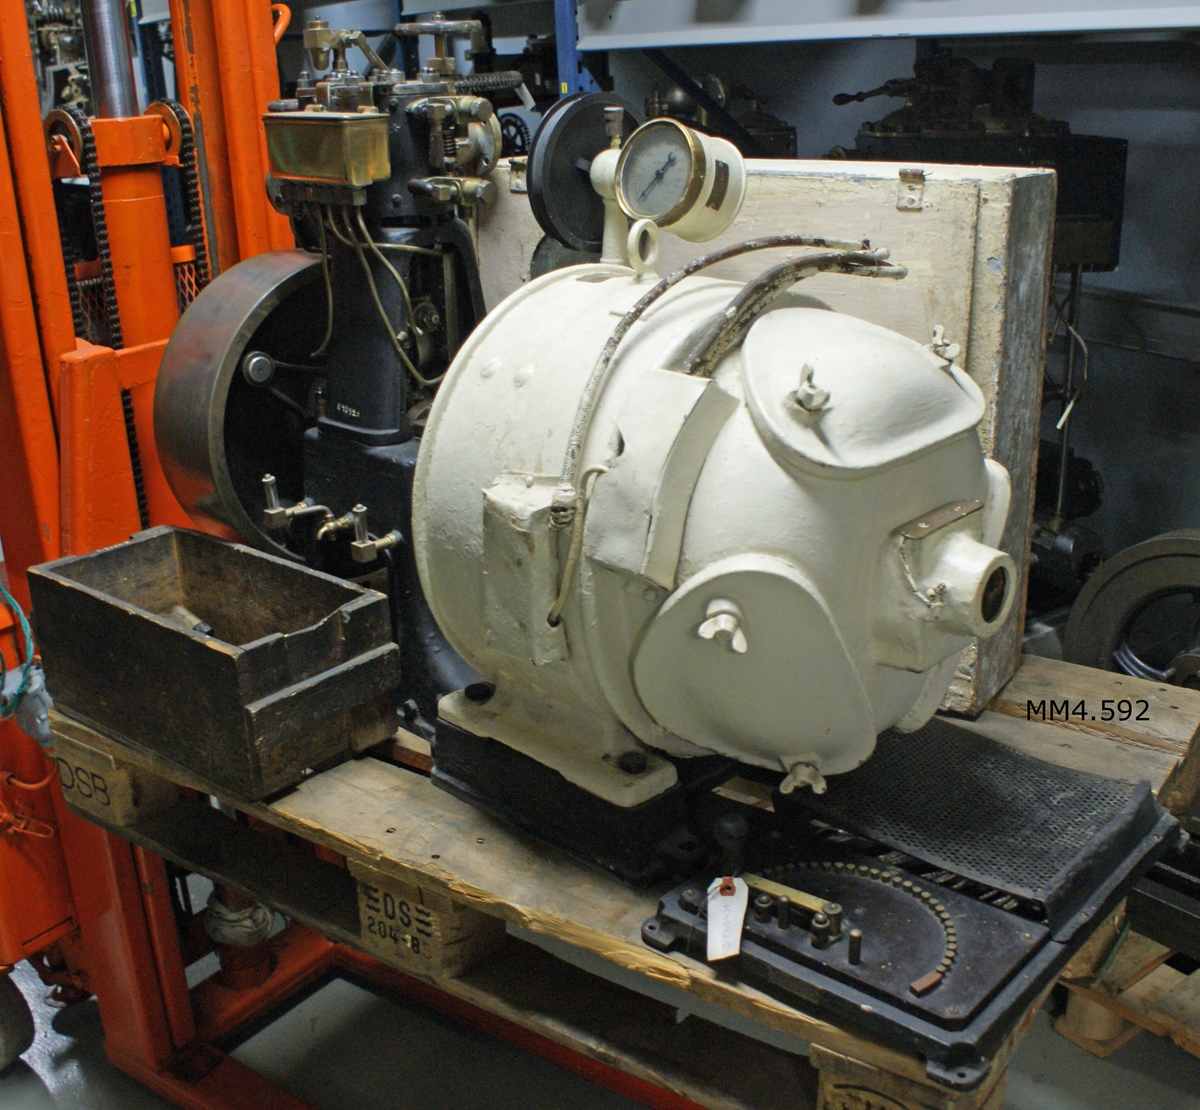 Ångmaskin för drivande av generator. Gjuten med stativ och cylinder i ett stycke med bottenplattan för generatorn (byggd på Gv. 1909).
Maskinen encylindrig med balanshjul och slidreglering i hjulet.
Bottenplattan märkt: 4603.